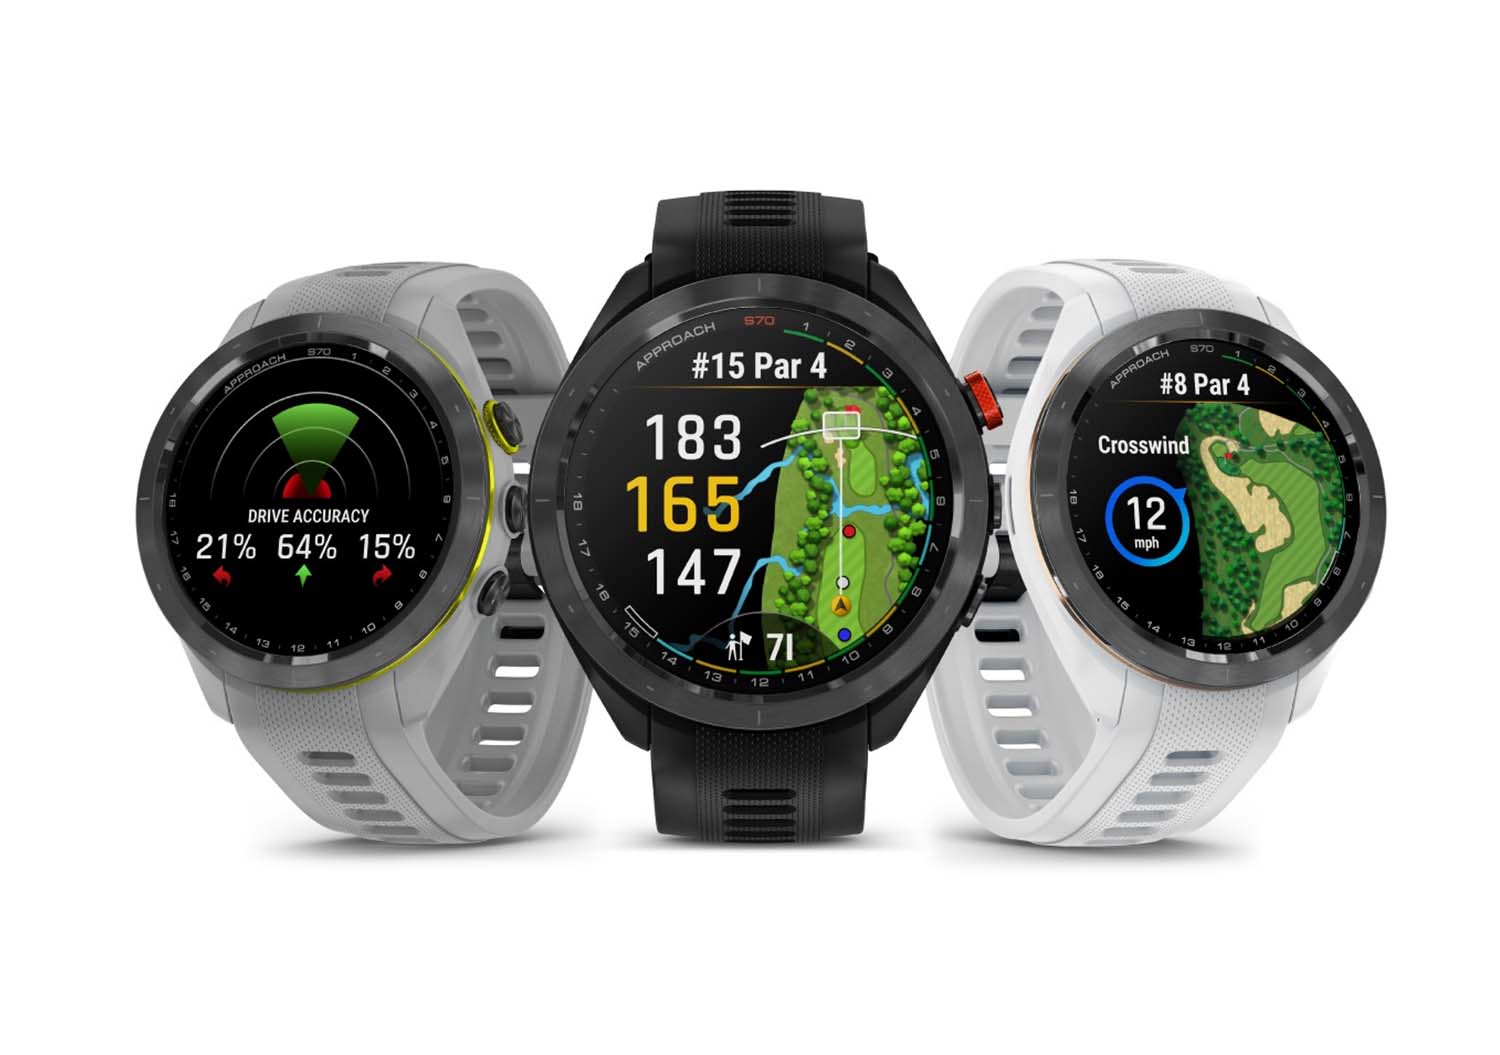 Garmin Approach S70 golf smartwatch: I tried it